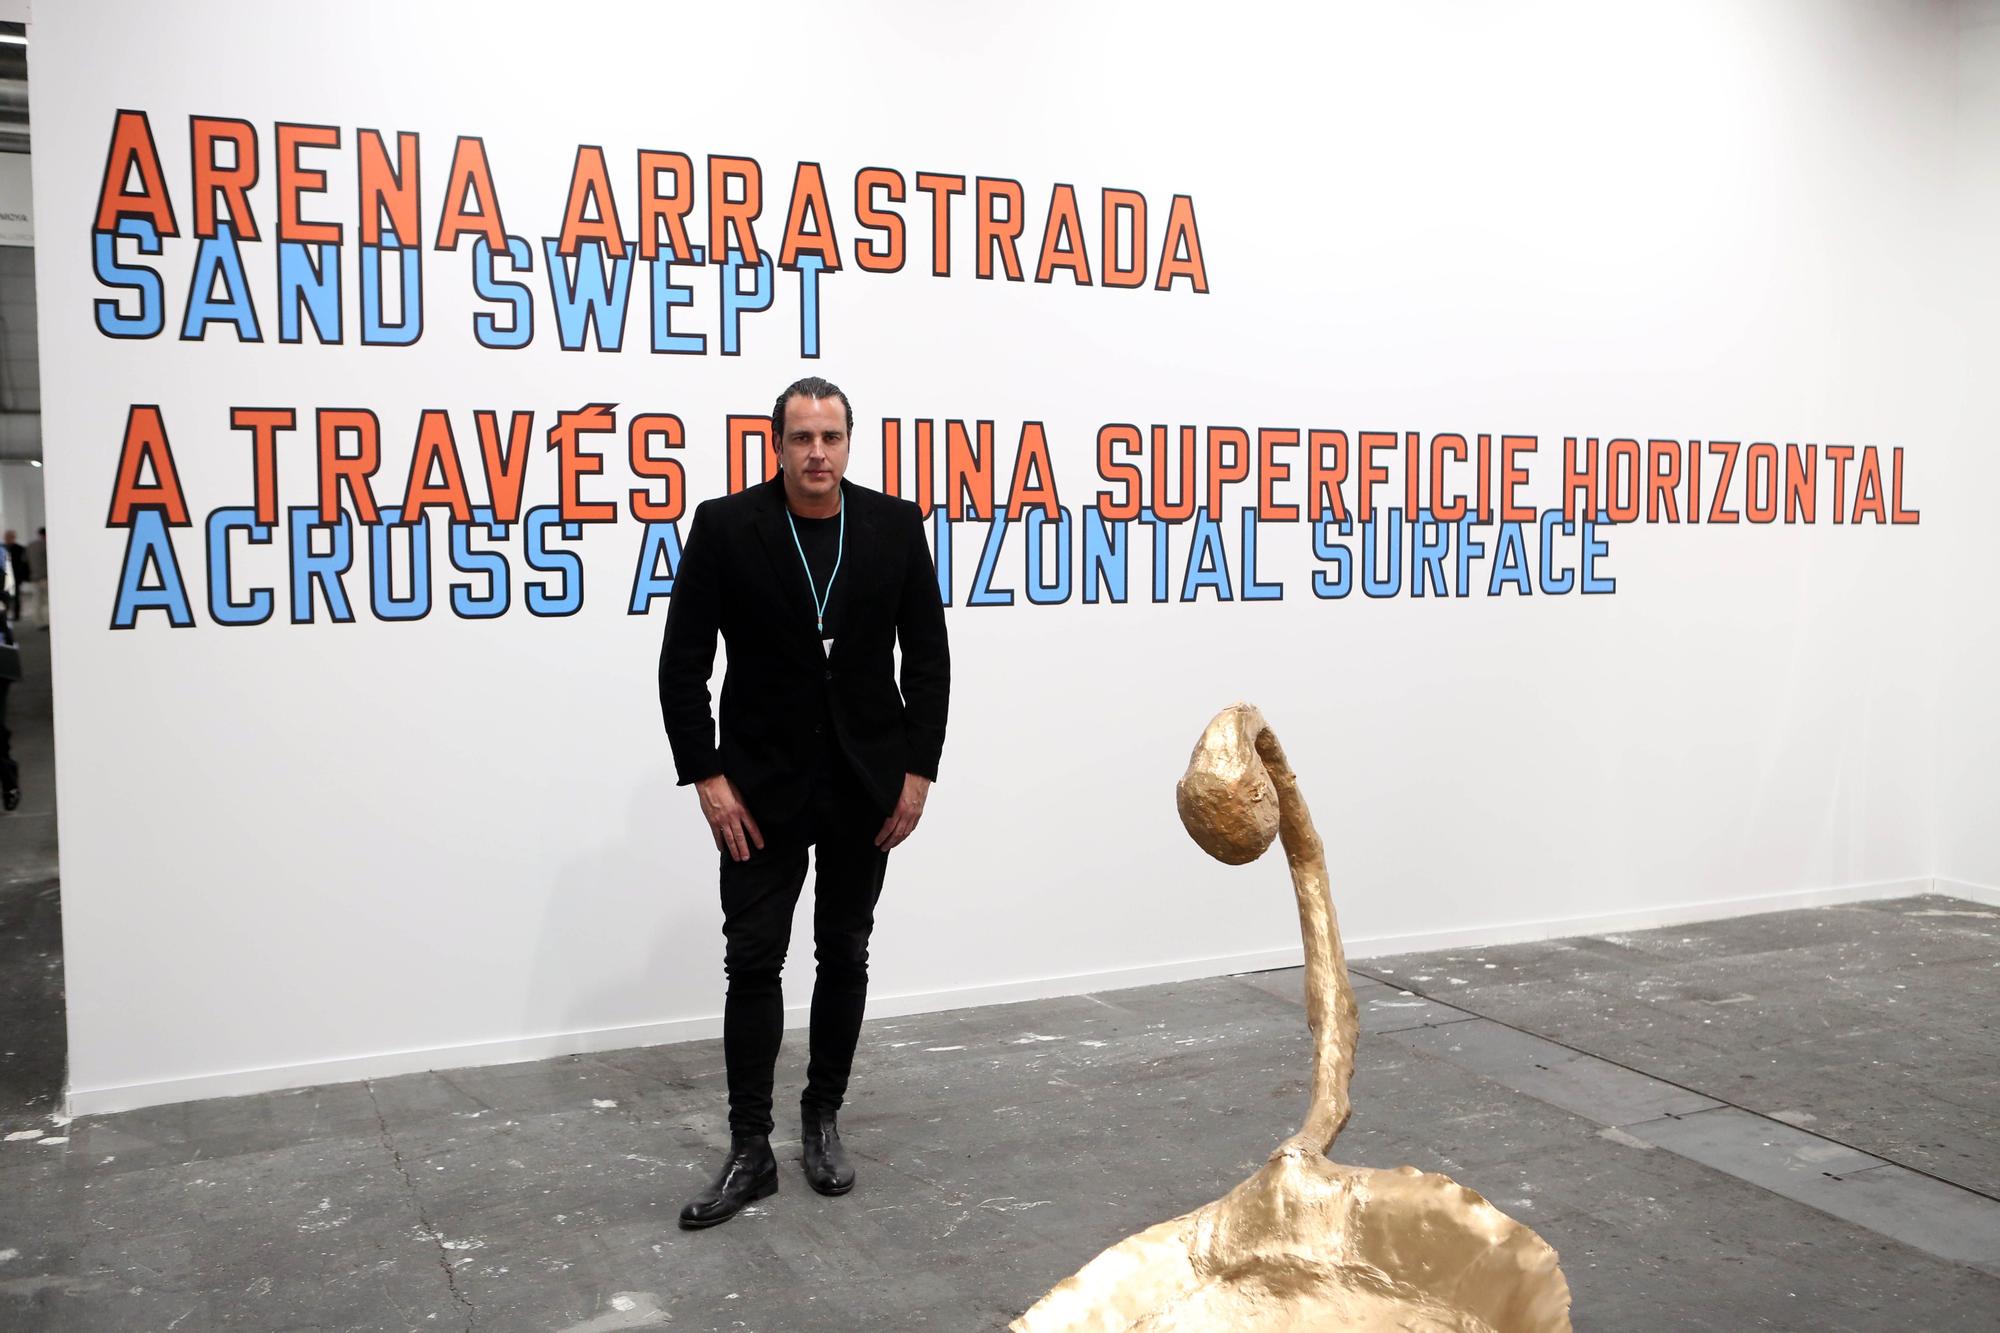 Muere en Francia el galerista Juan Antonio Horrach a los 52 años